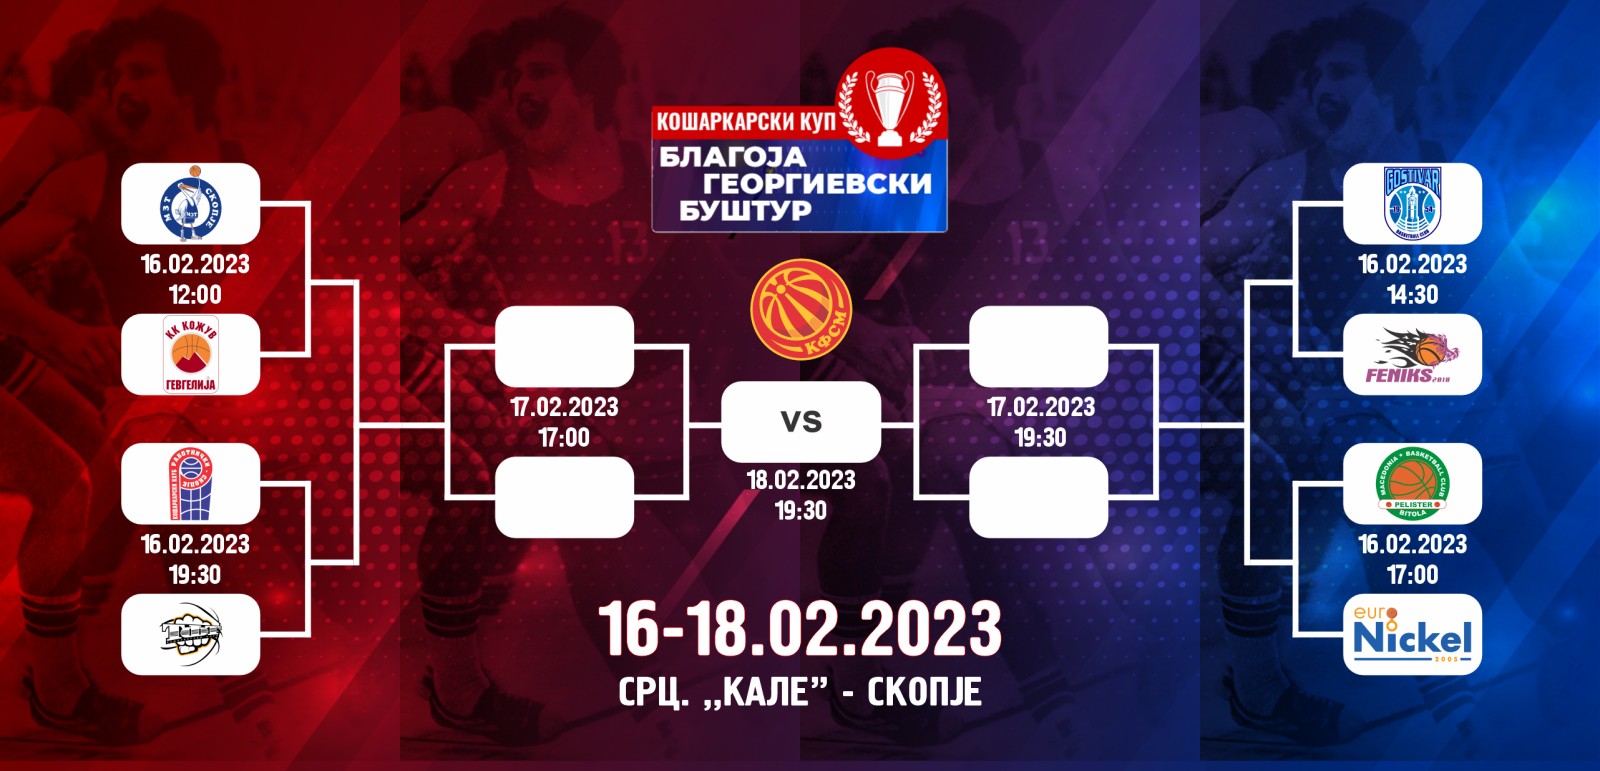 Распоред на одигрување на натпреварите од Купот „Благоја Георгиевски-Буштур“ 2023- Скопје